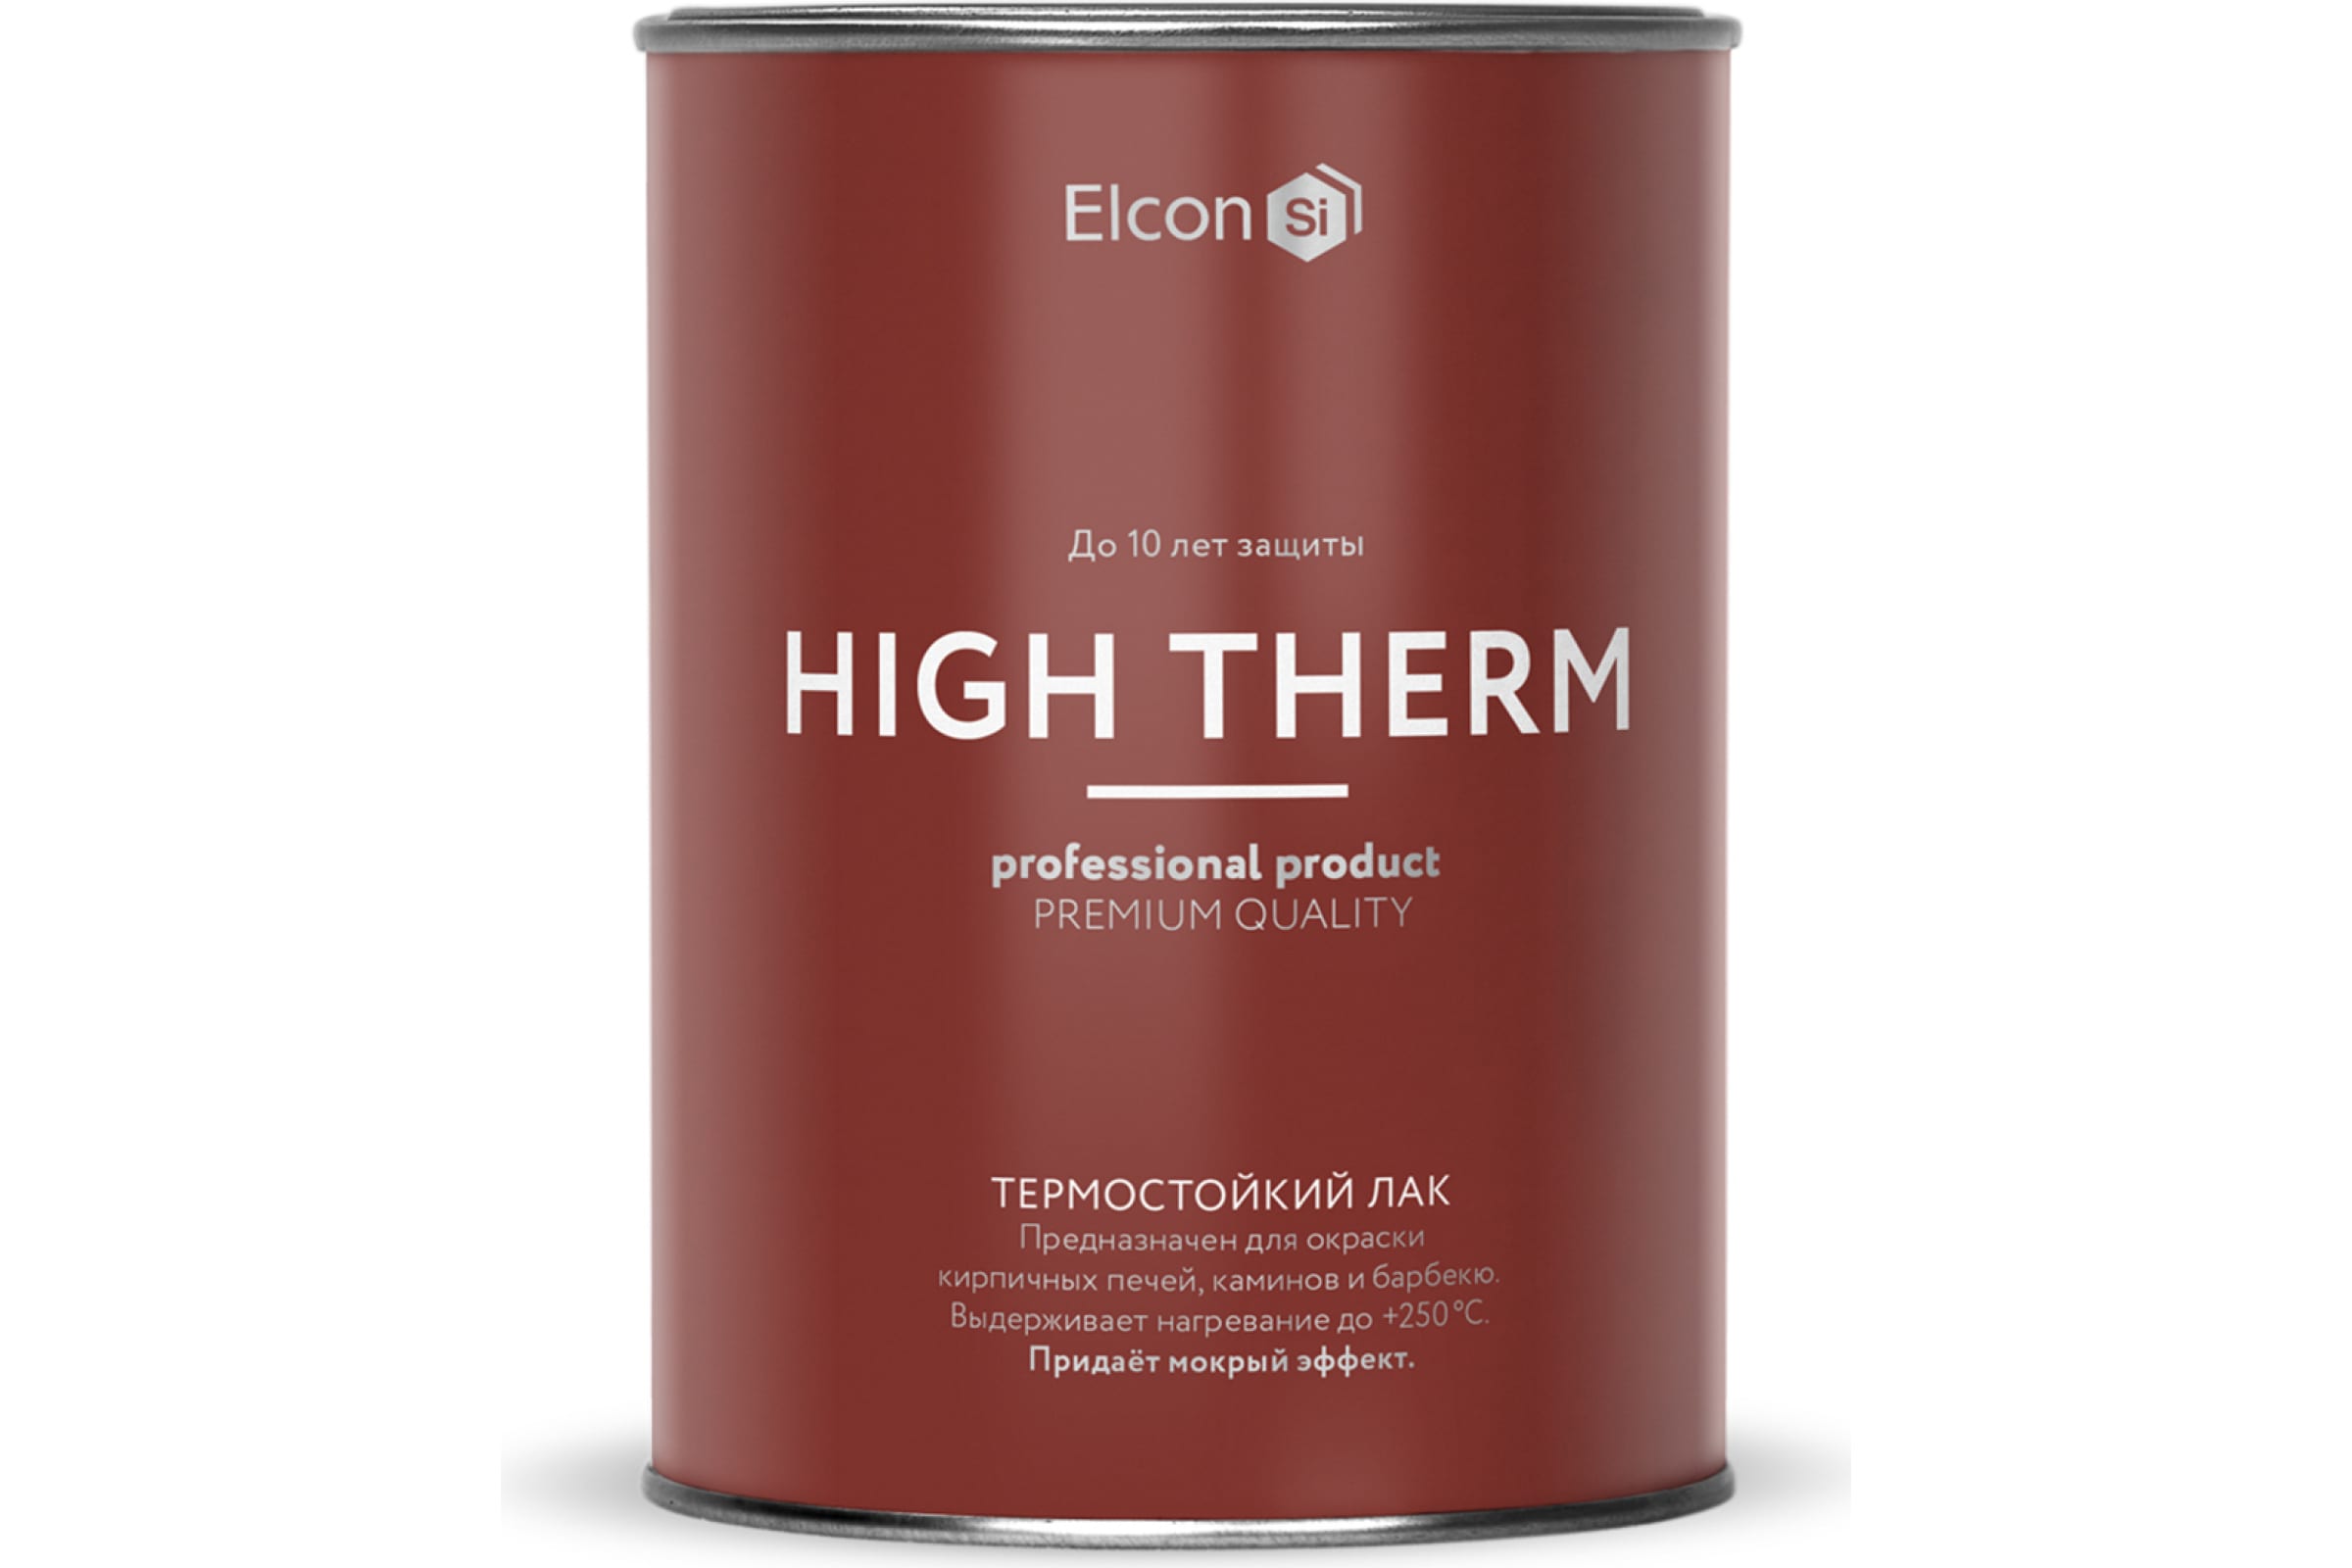 фото Термостойкий лак elcon high therm, бесцветный до +250 градусов, 1 л